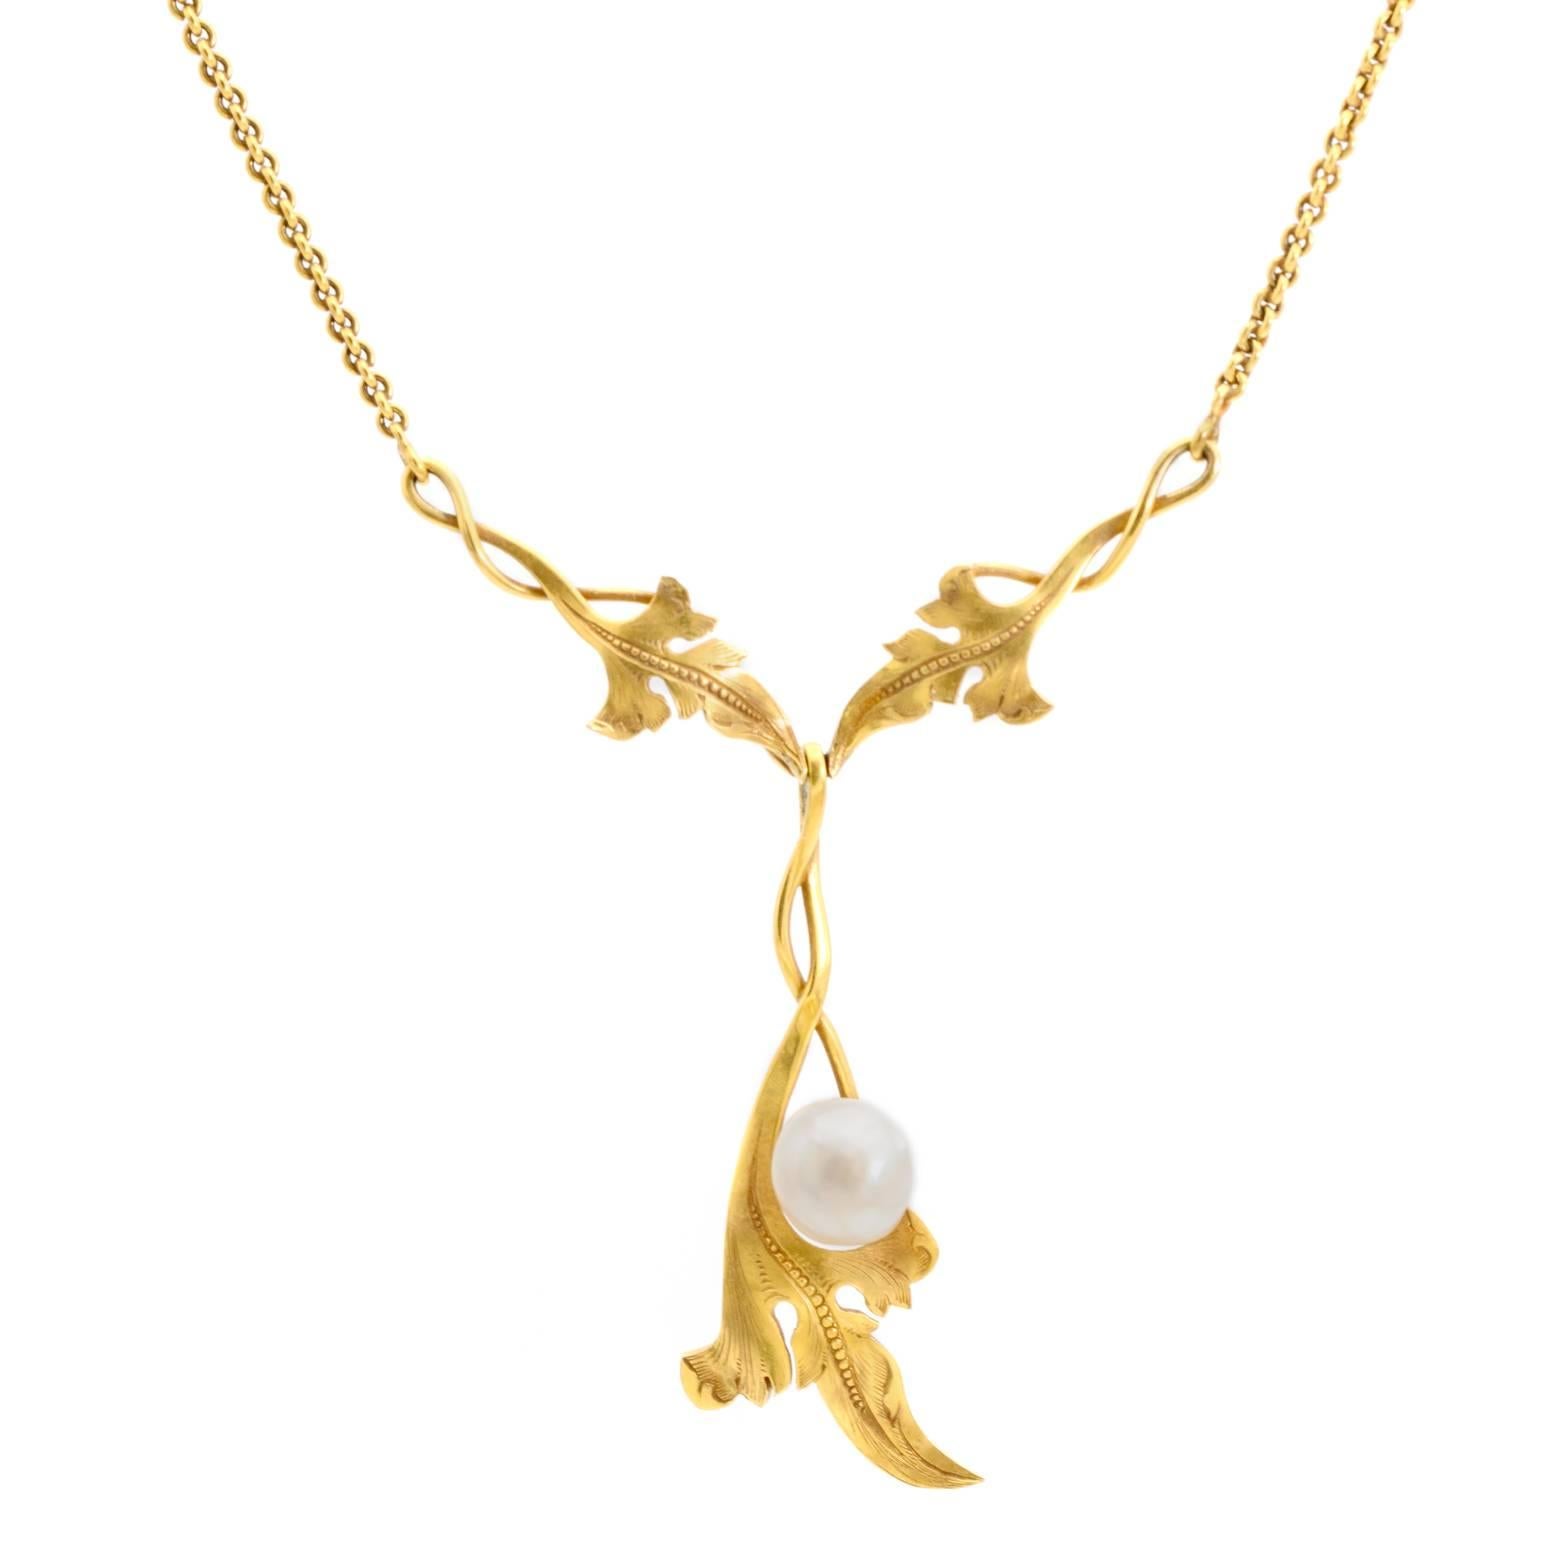 Antique Gold Necklace Art Nouveau Style Natural Pearl For Sale